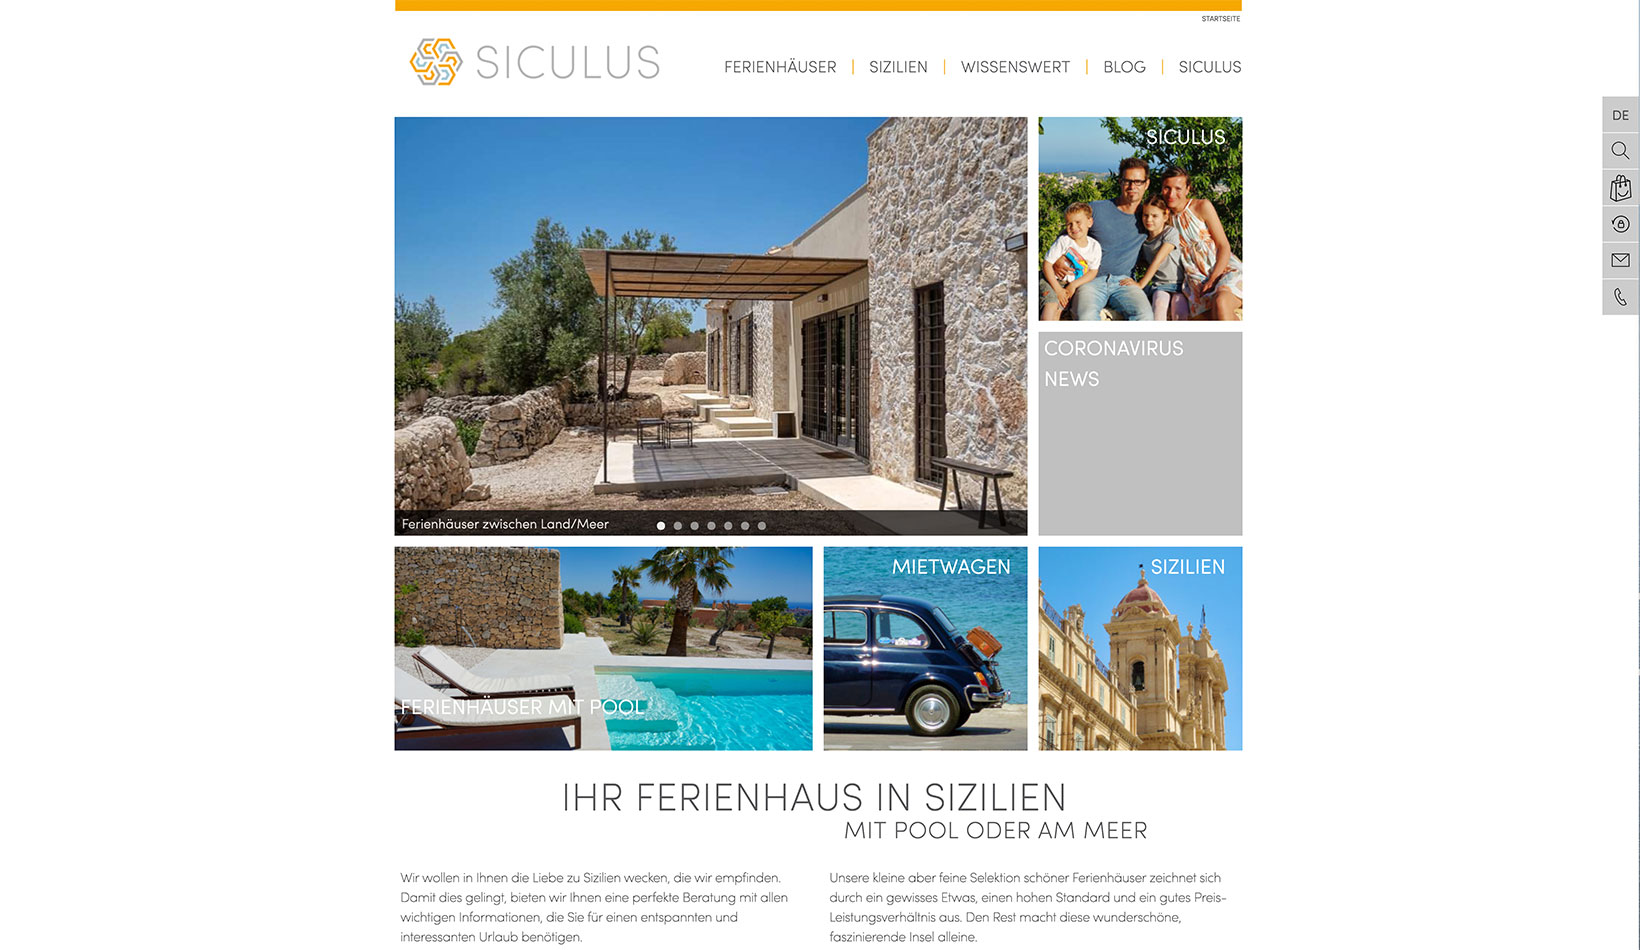 Referenz: Siculus, Italien Ferienhäuser